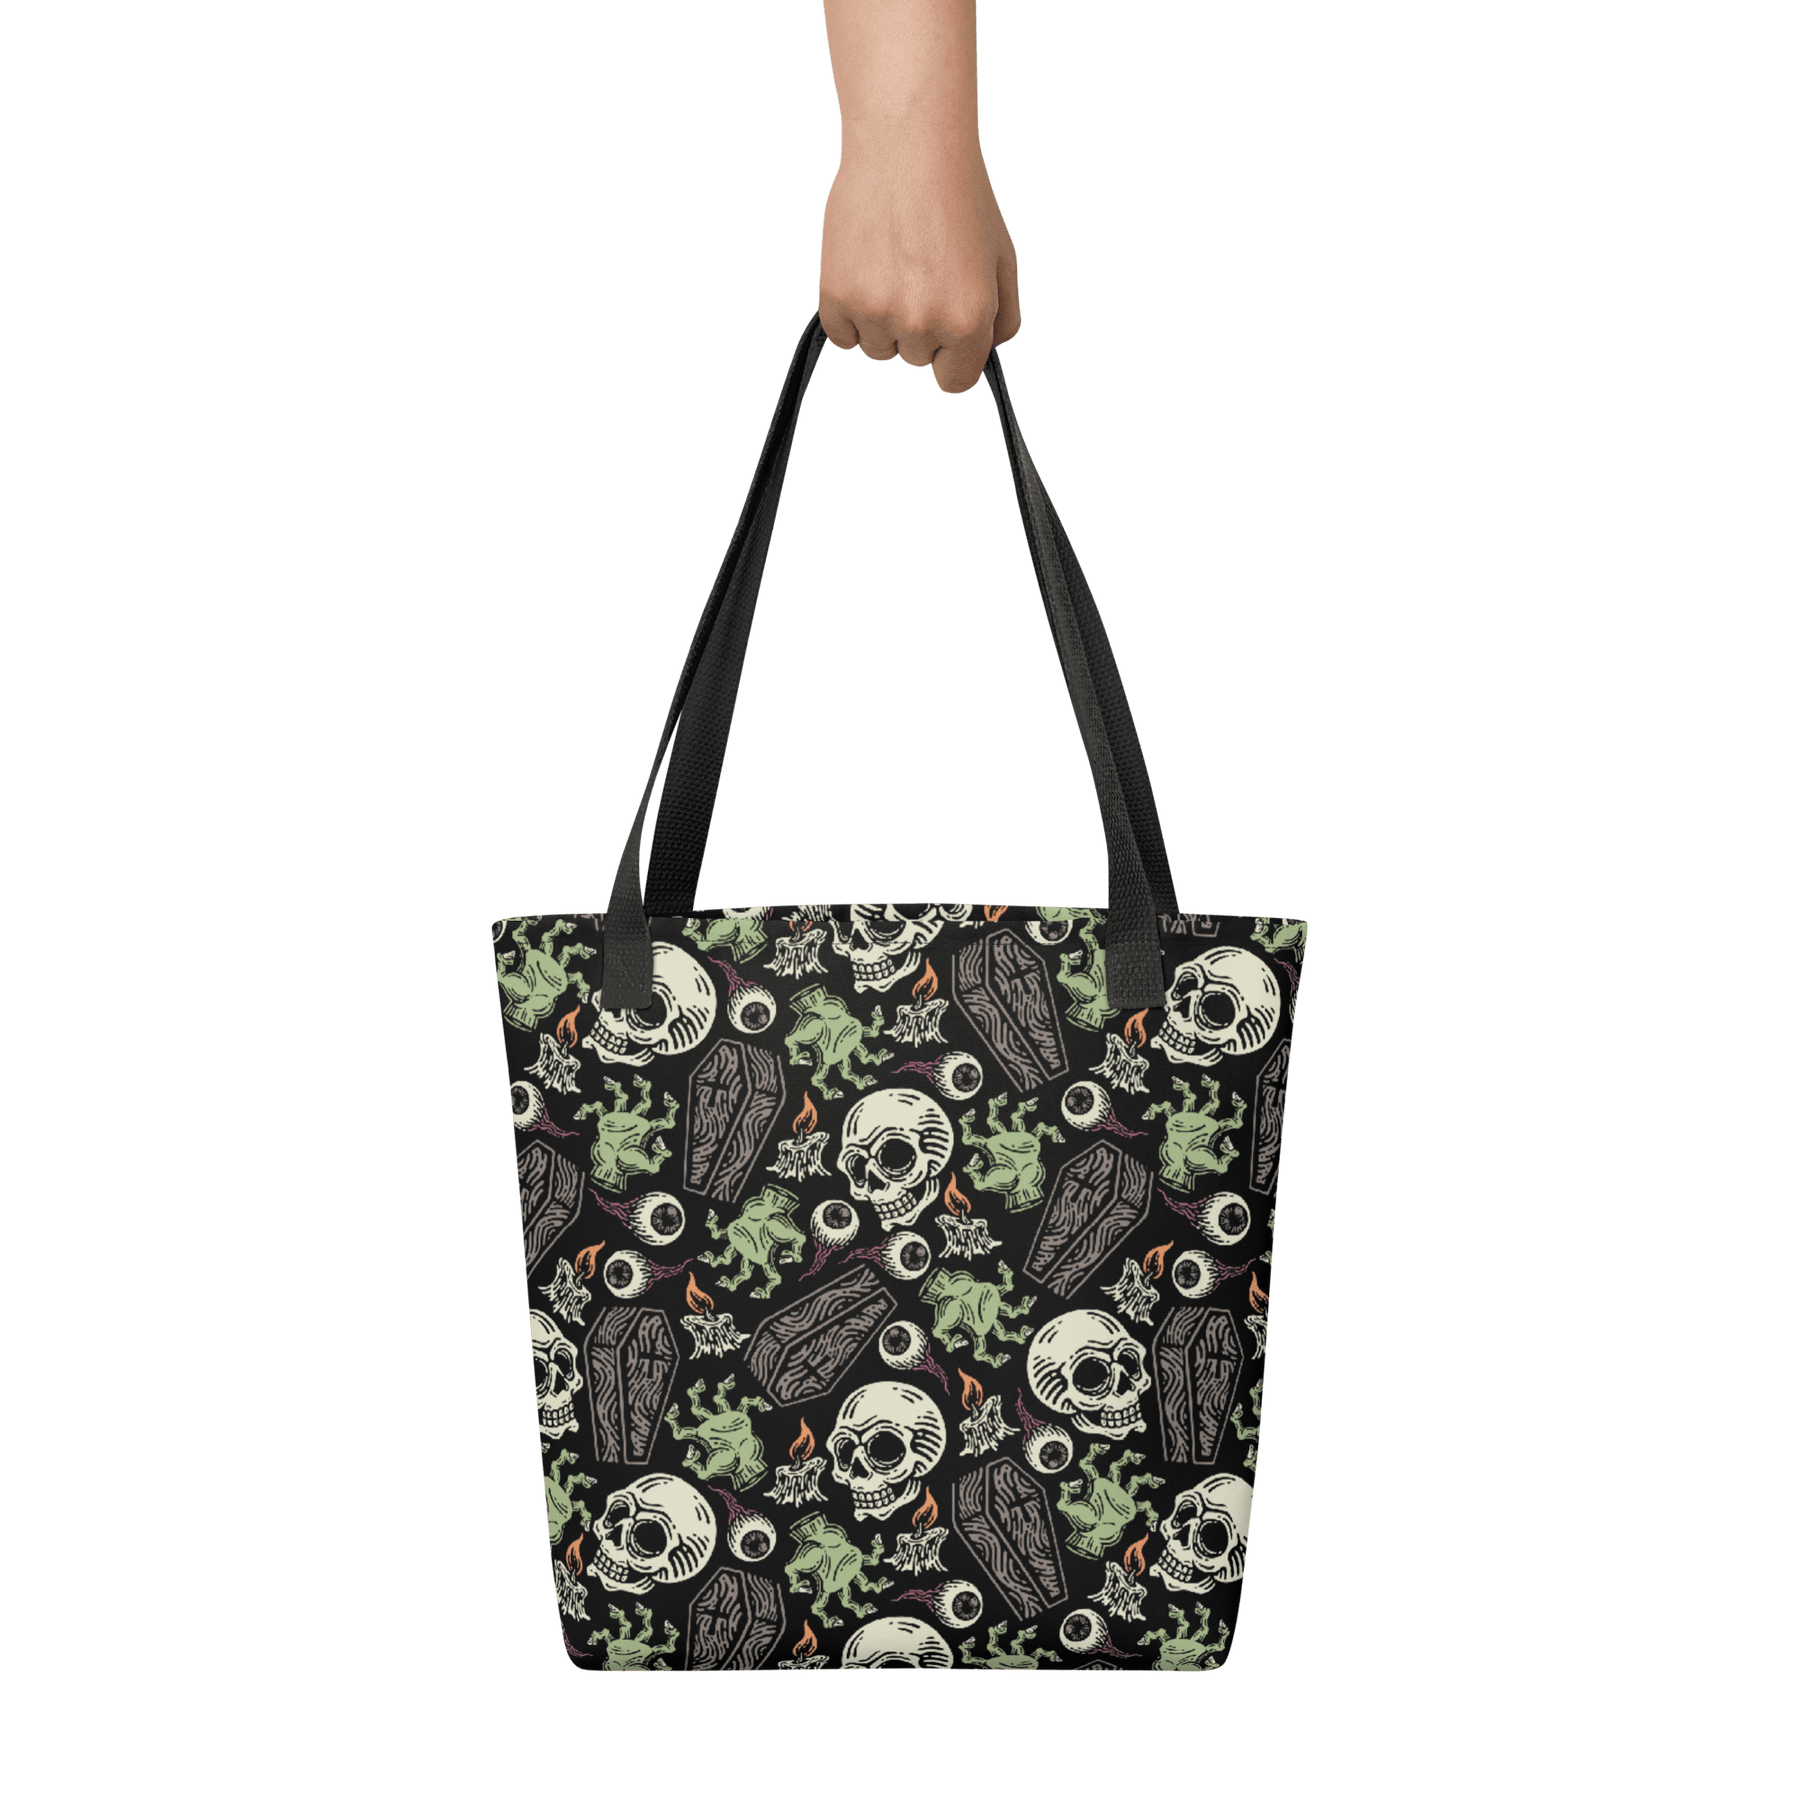 Zombabe Tote bag - Goth Cloth Co.9880267_4533